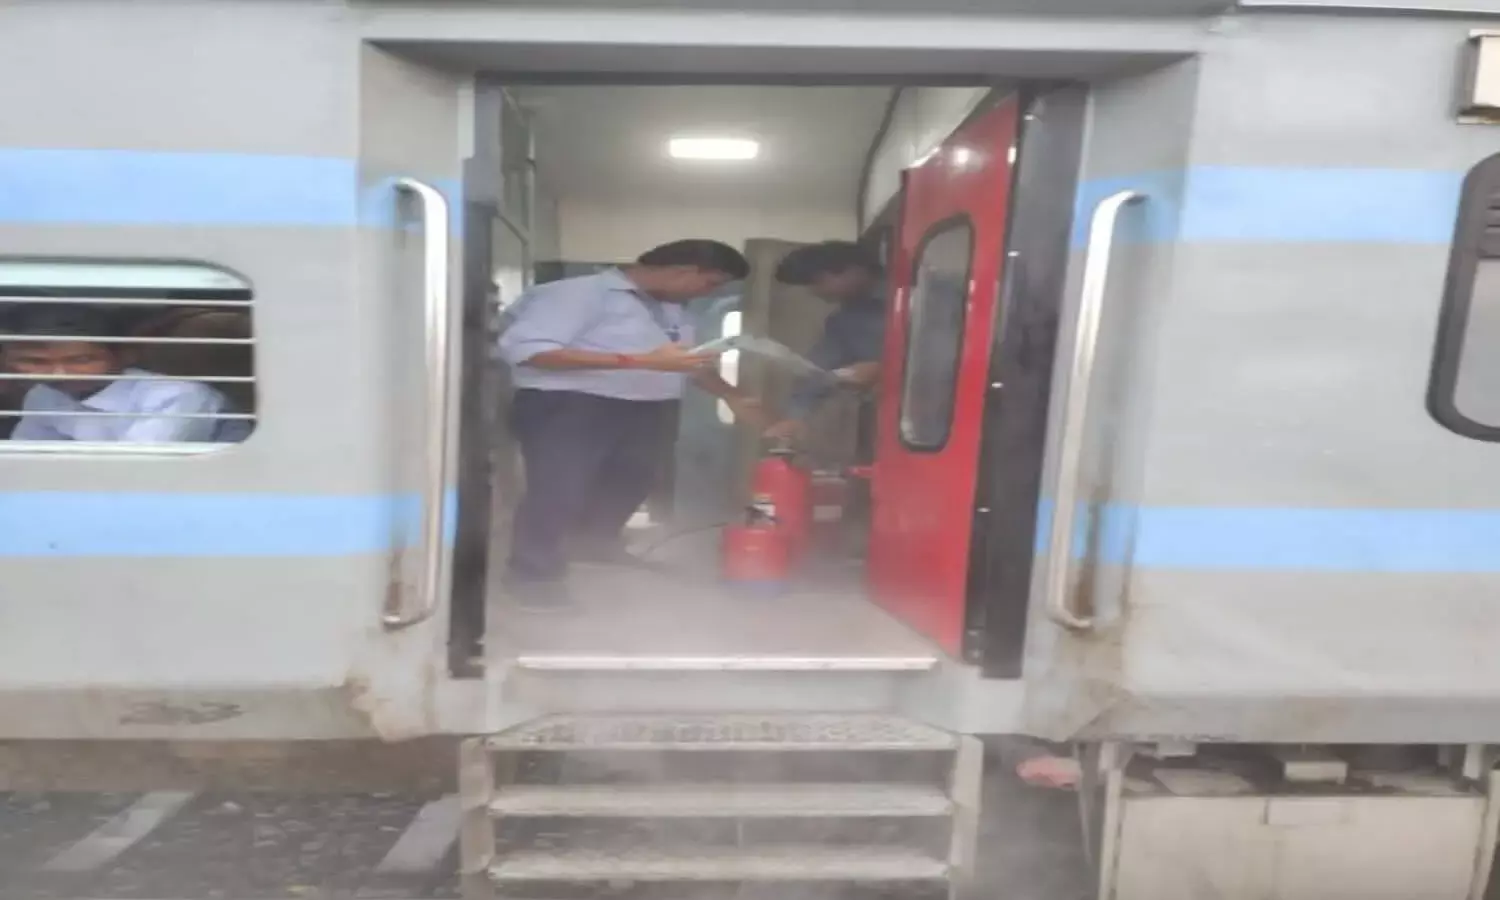 Hapur News fire in Satyagraha Express train toilet panic among passengers | Hapur News: सत्याग्रह एक्सप्रेस ट्रेन के टॉयलेट में लगी आग, यात्रियों में मची अफरातफरी | News Track in Hindi